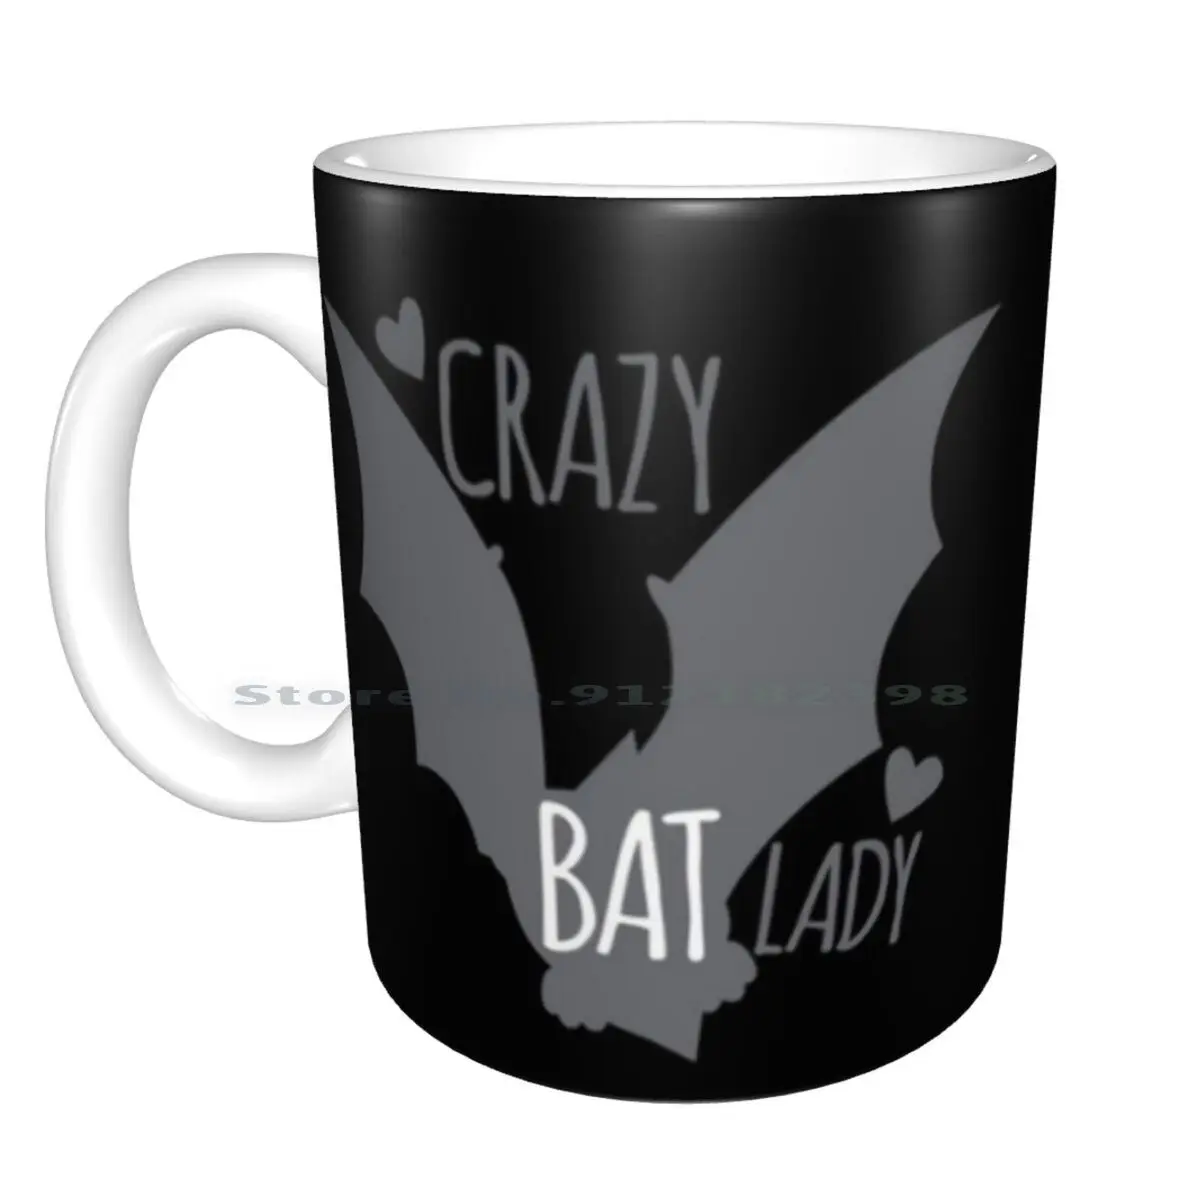 Crazy Bat Lady White Mug 